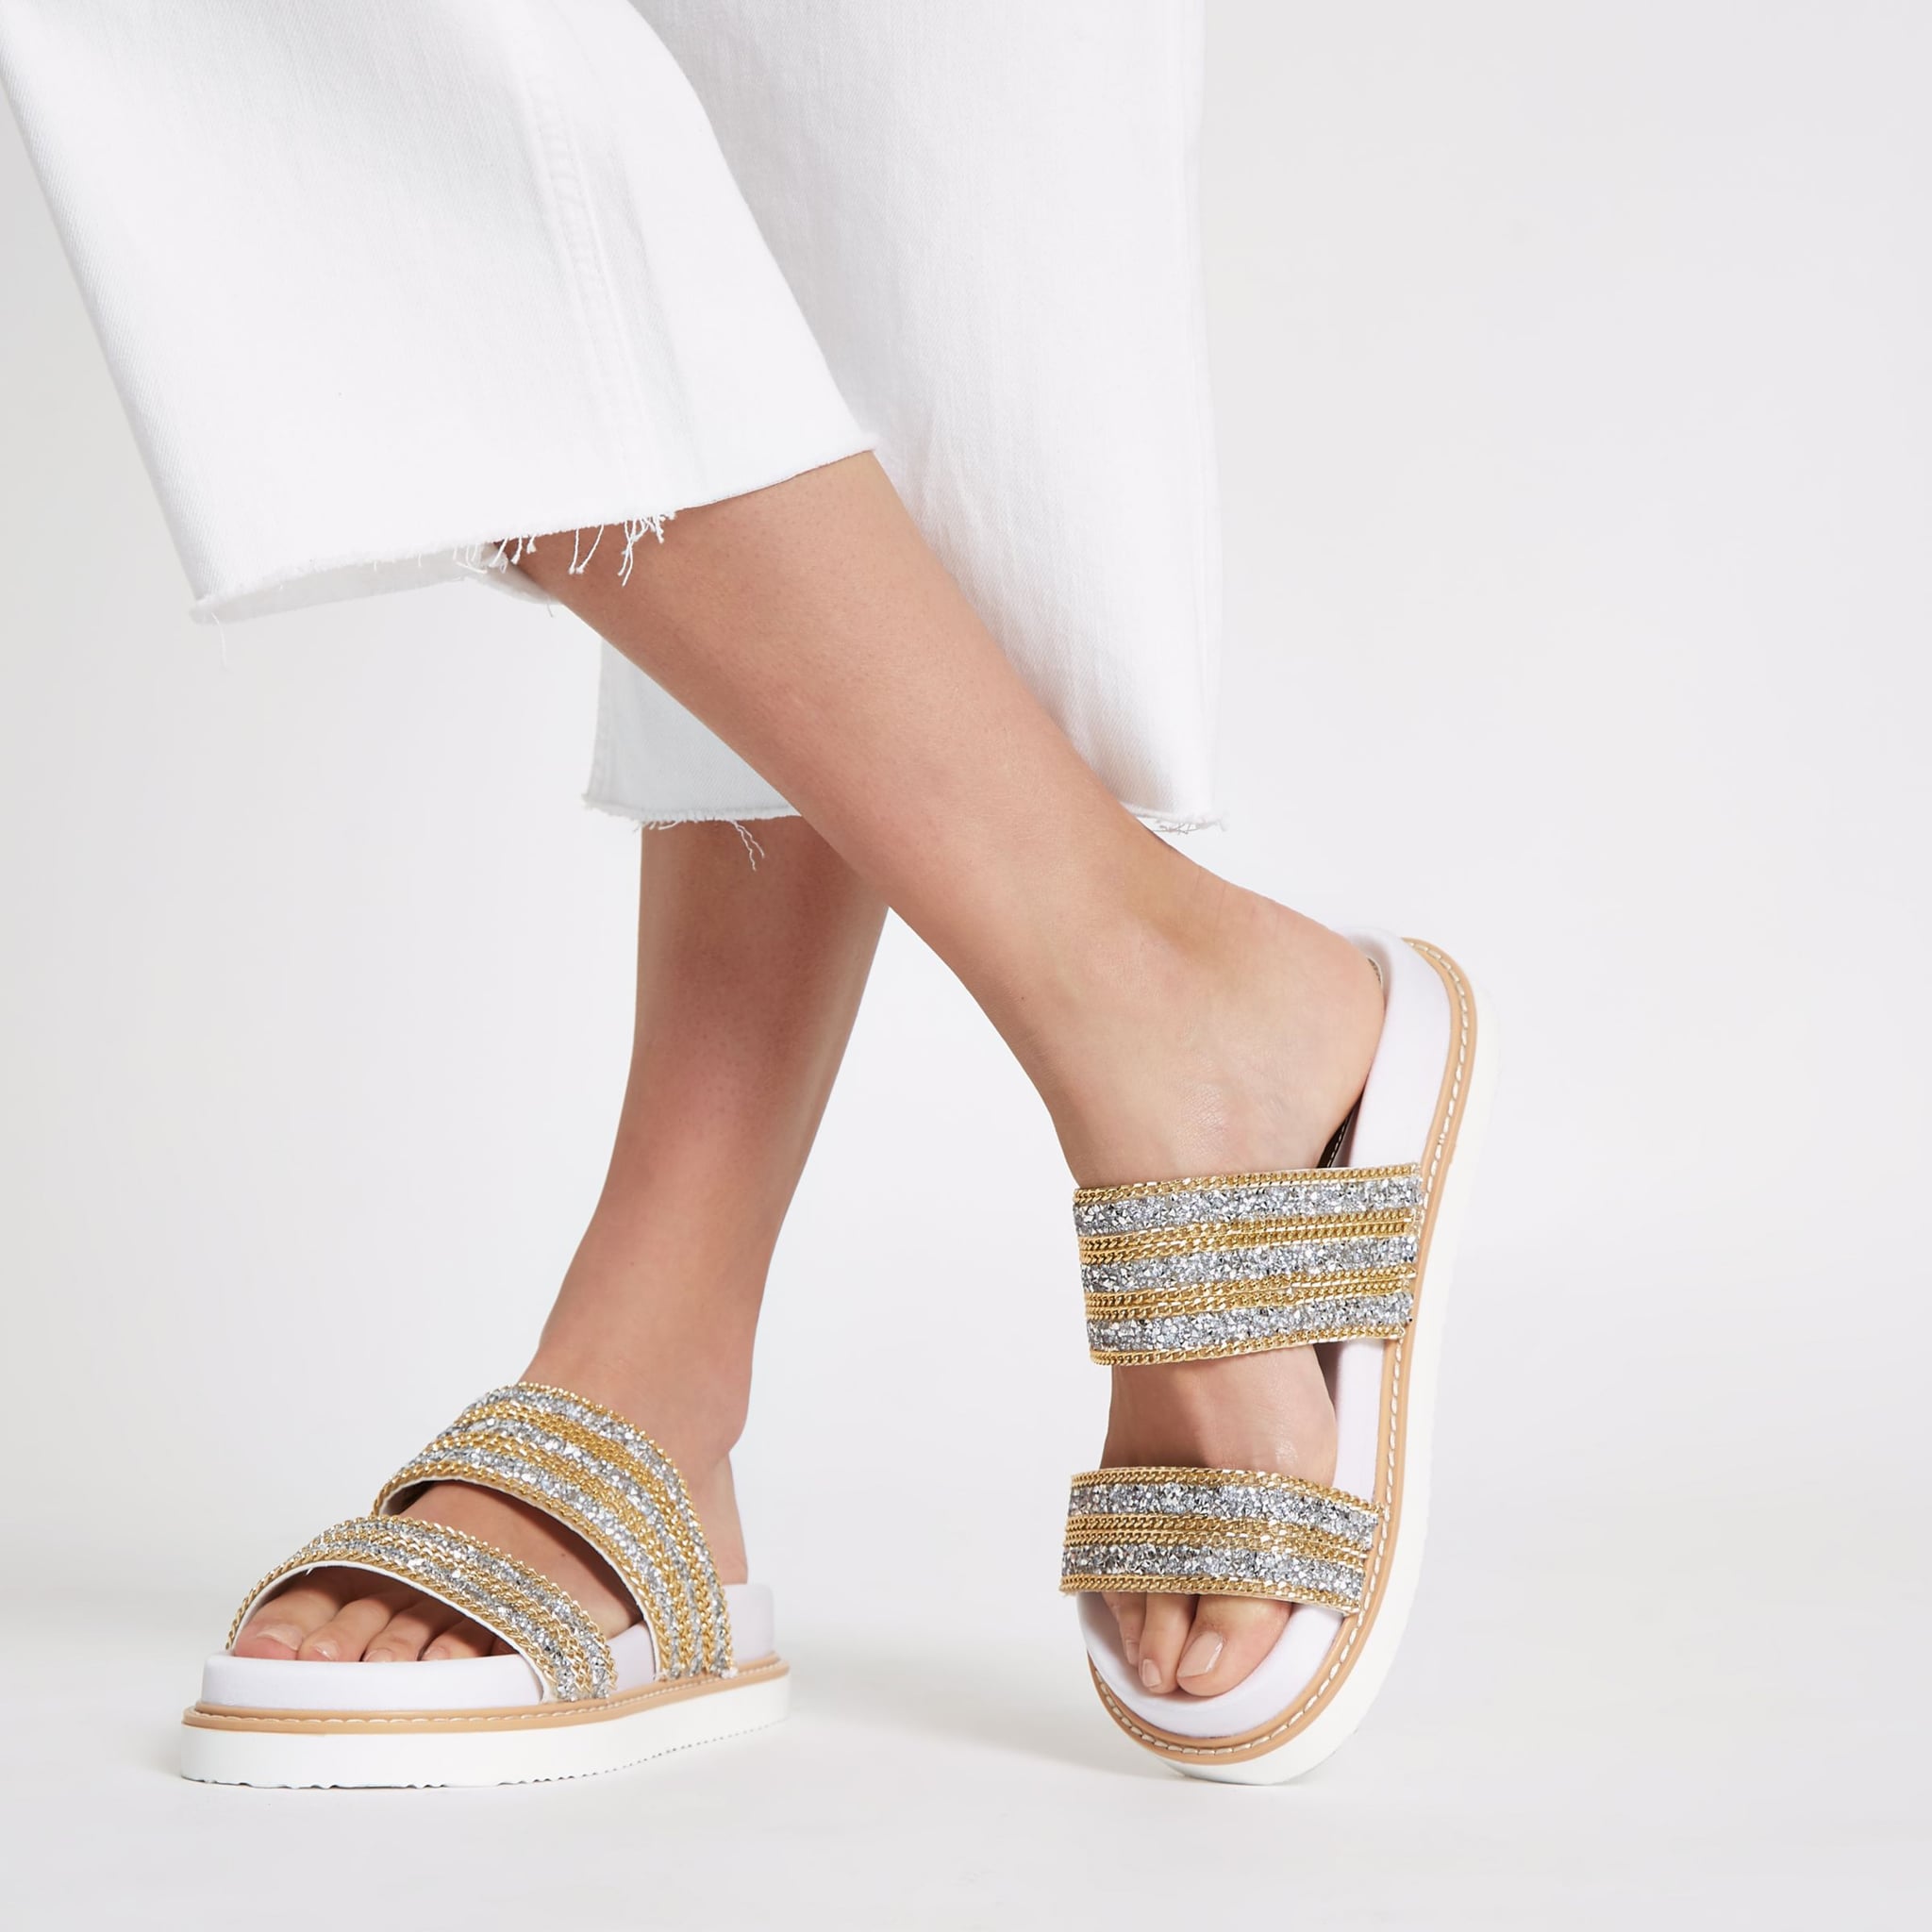 white summer sandals 2018